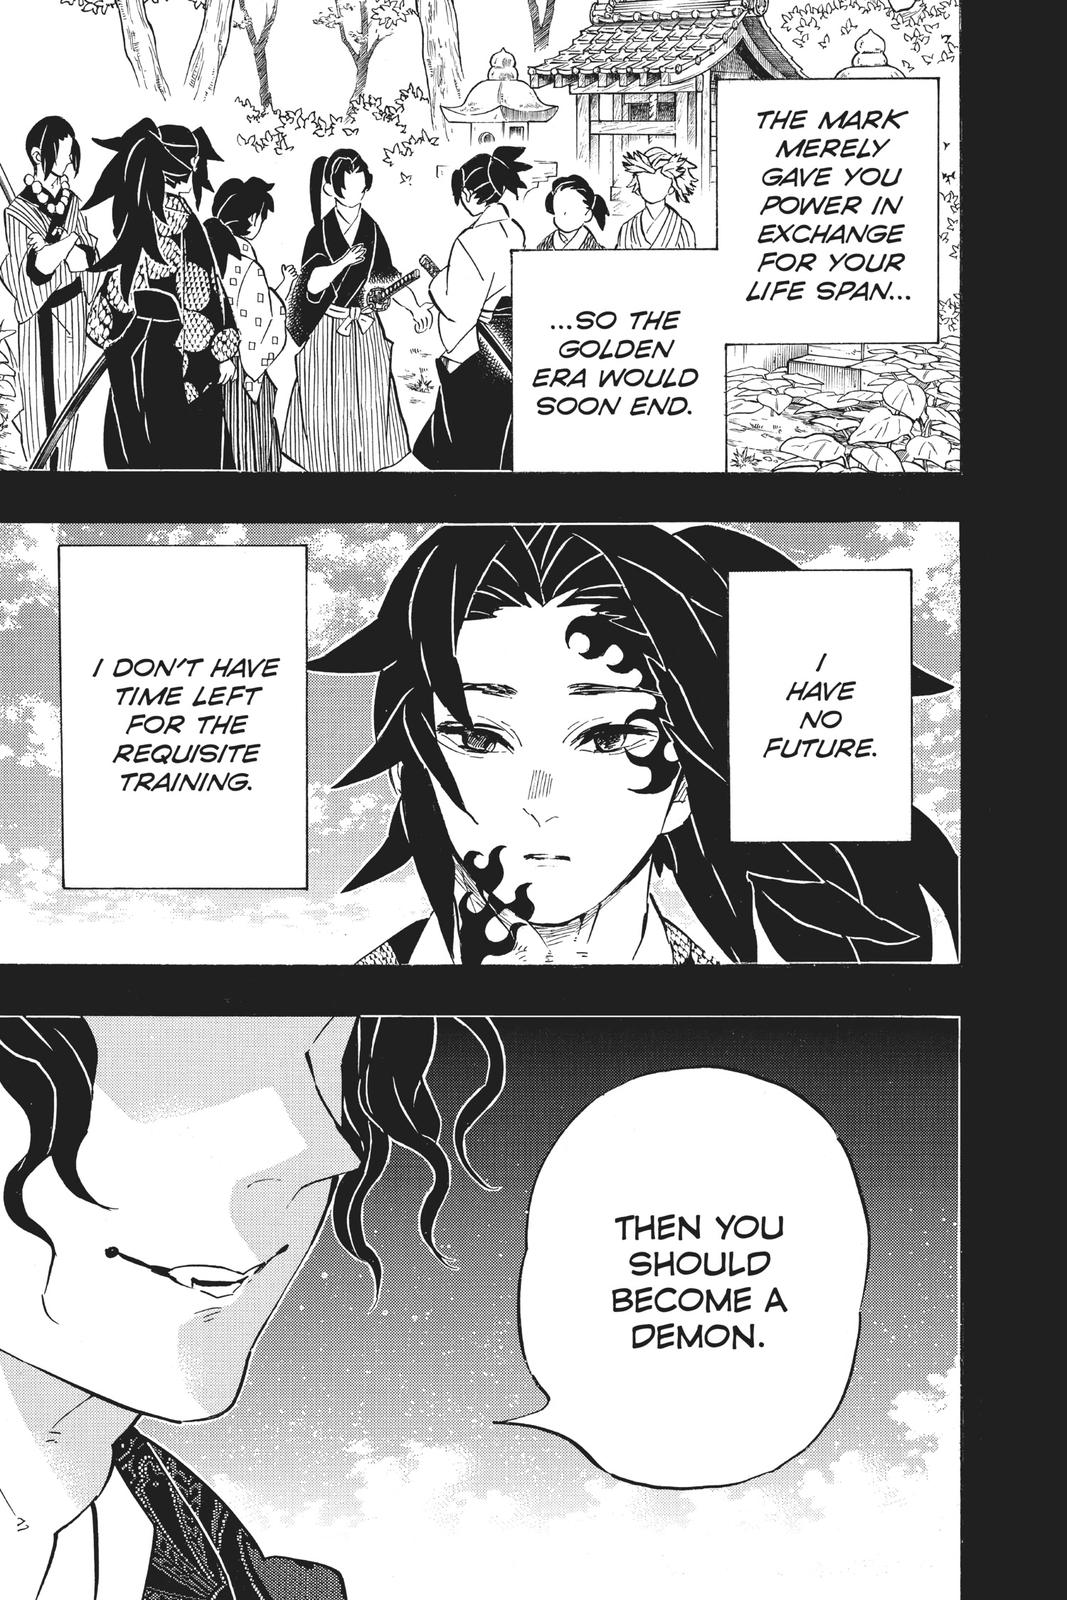 Demon Slayer Manga Manga Chapter - 178 - image 5